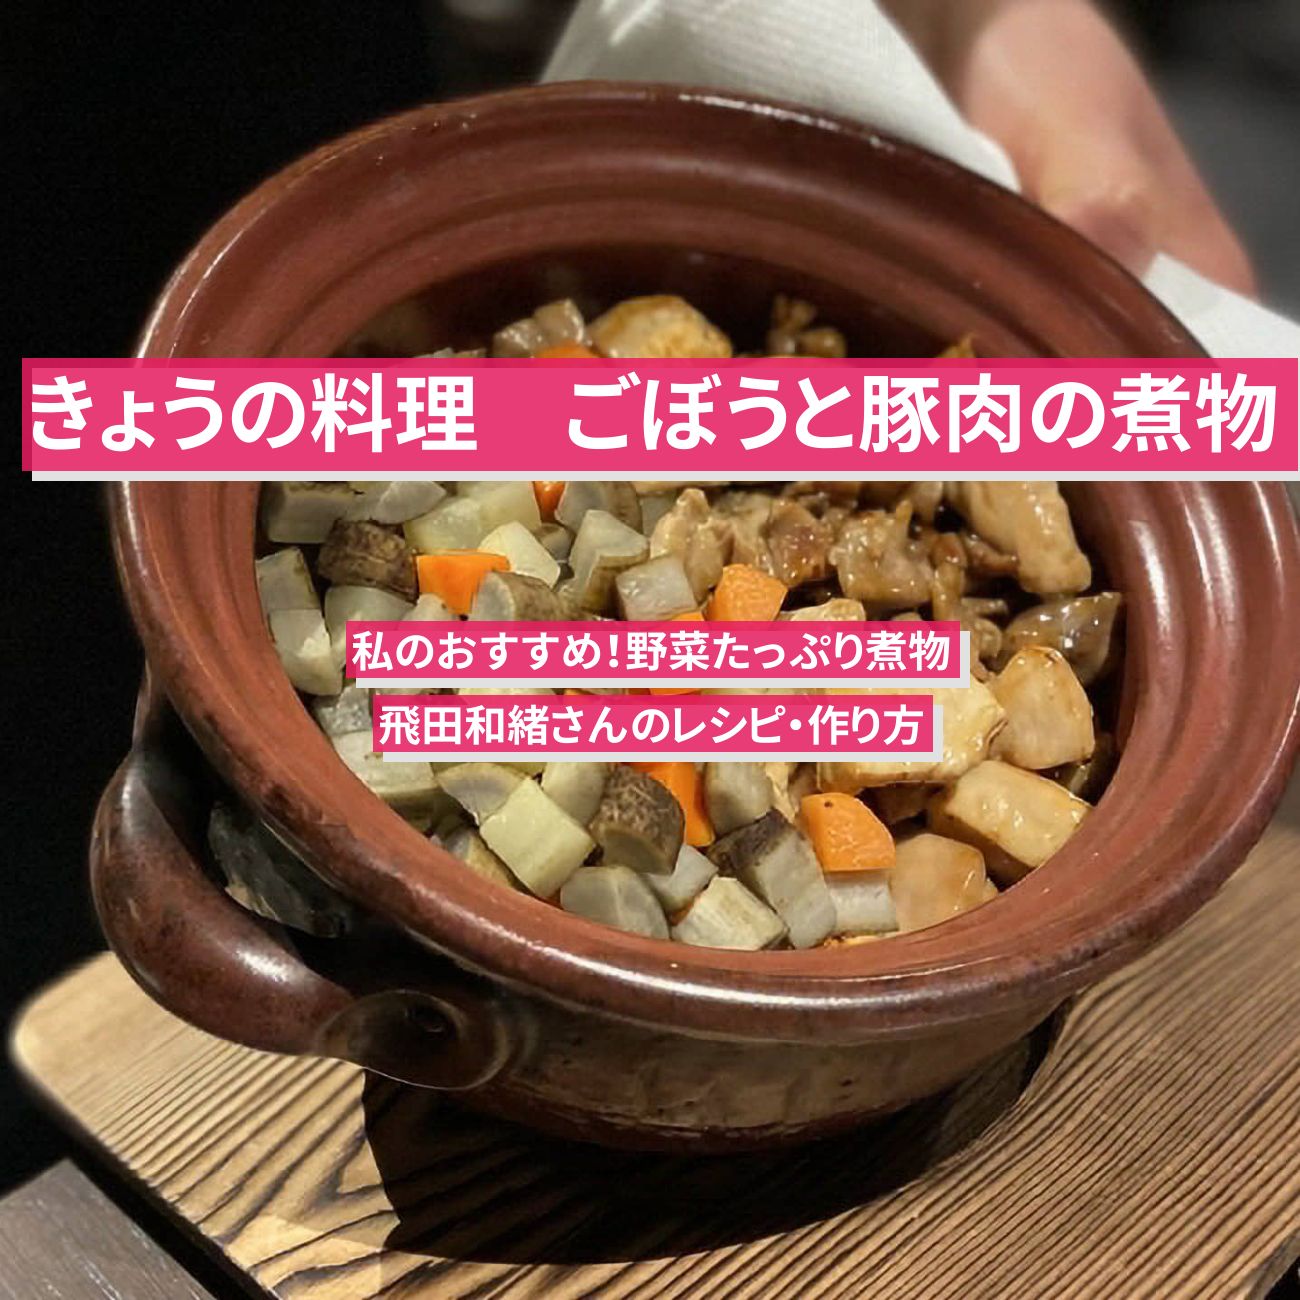 【きょうの料理】『ごぼうと豚肉の煮物』飛田和緒さんのレシピ・作り方